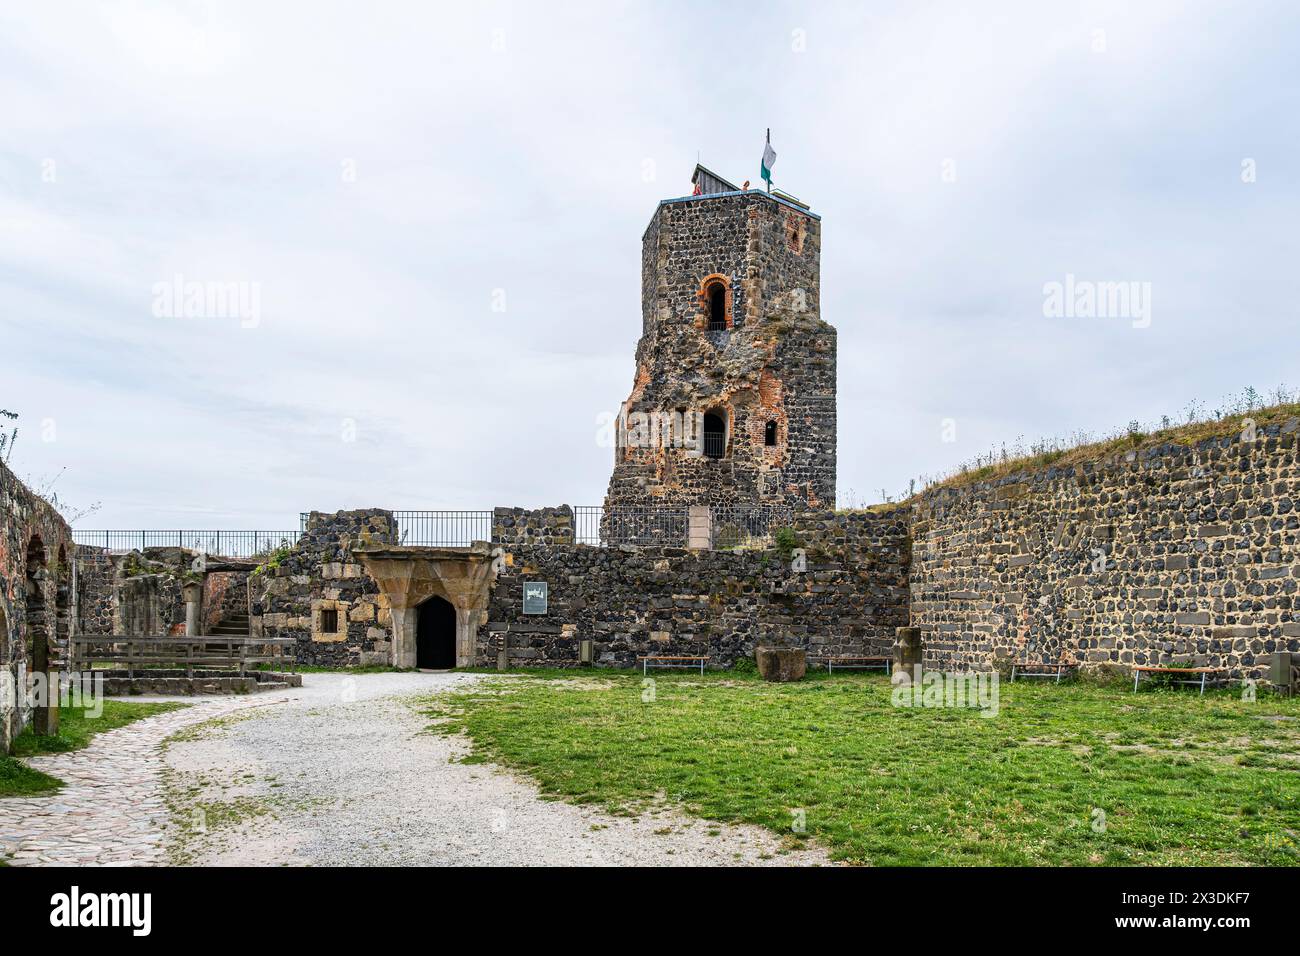 Castello di Stolpen, parziale rovina di un castello medievale in cima a una collina, in seguito un palazzo e una fortezza, fondato sulla collina basaltica di Stolpen, Sassonia, Germania. Foto Stock